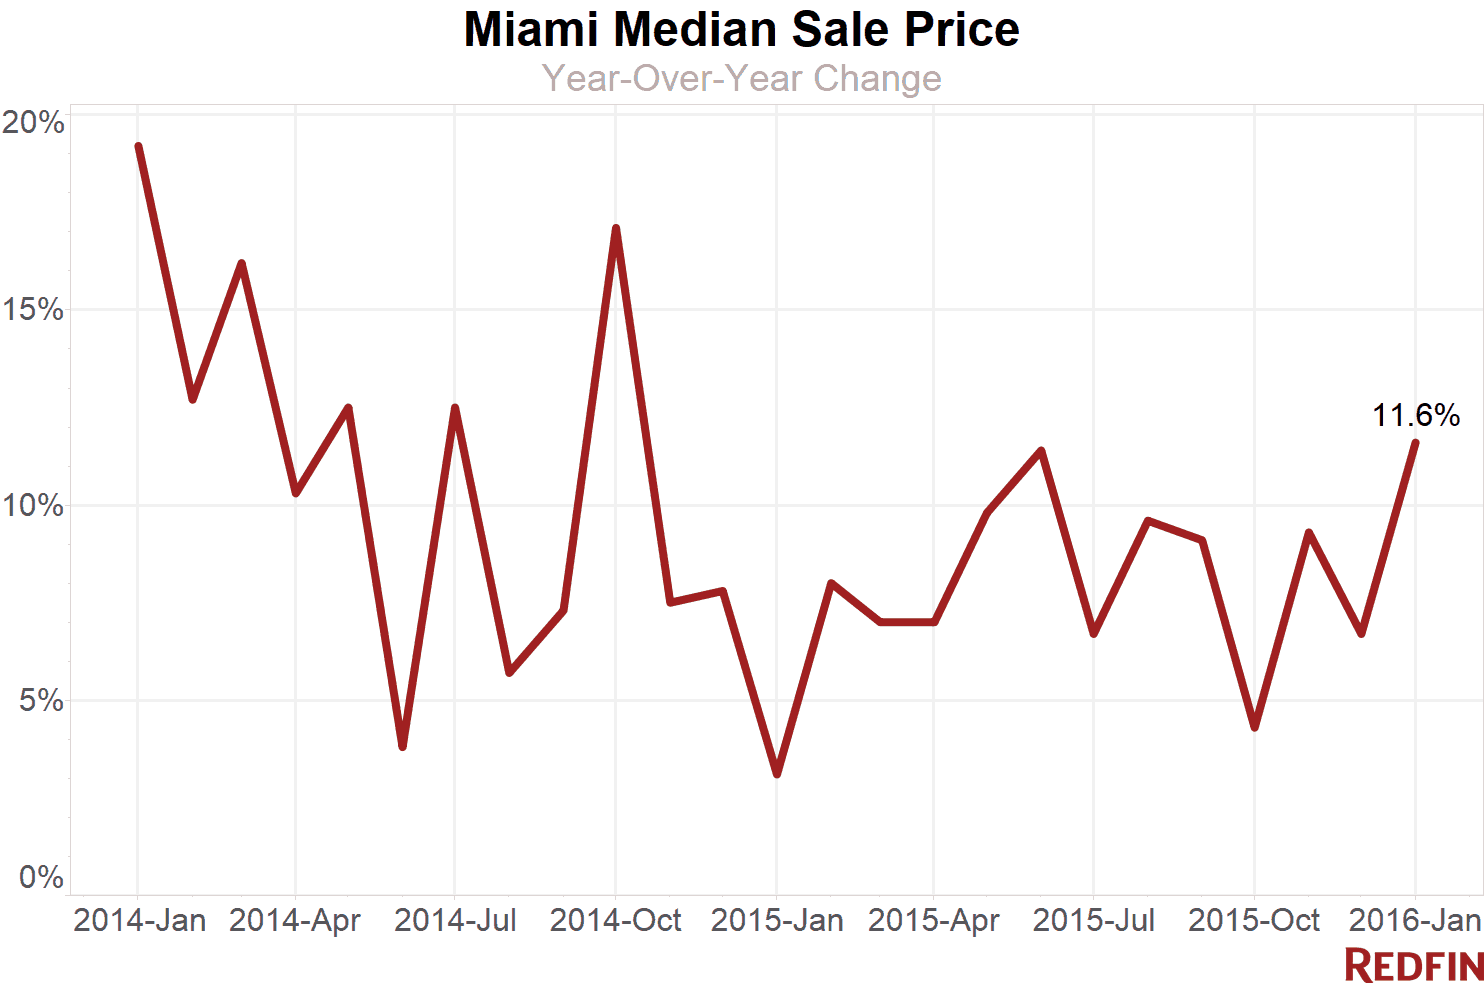 Miami median sale price